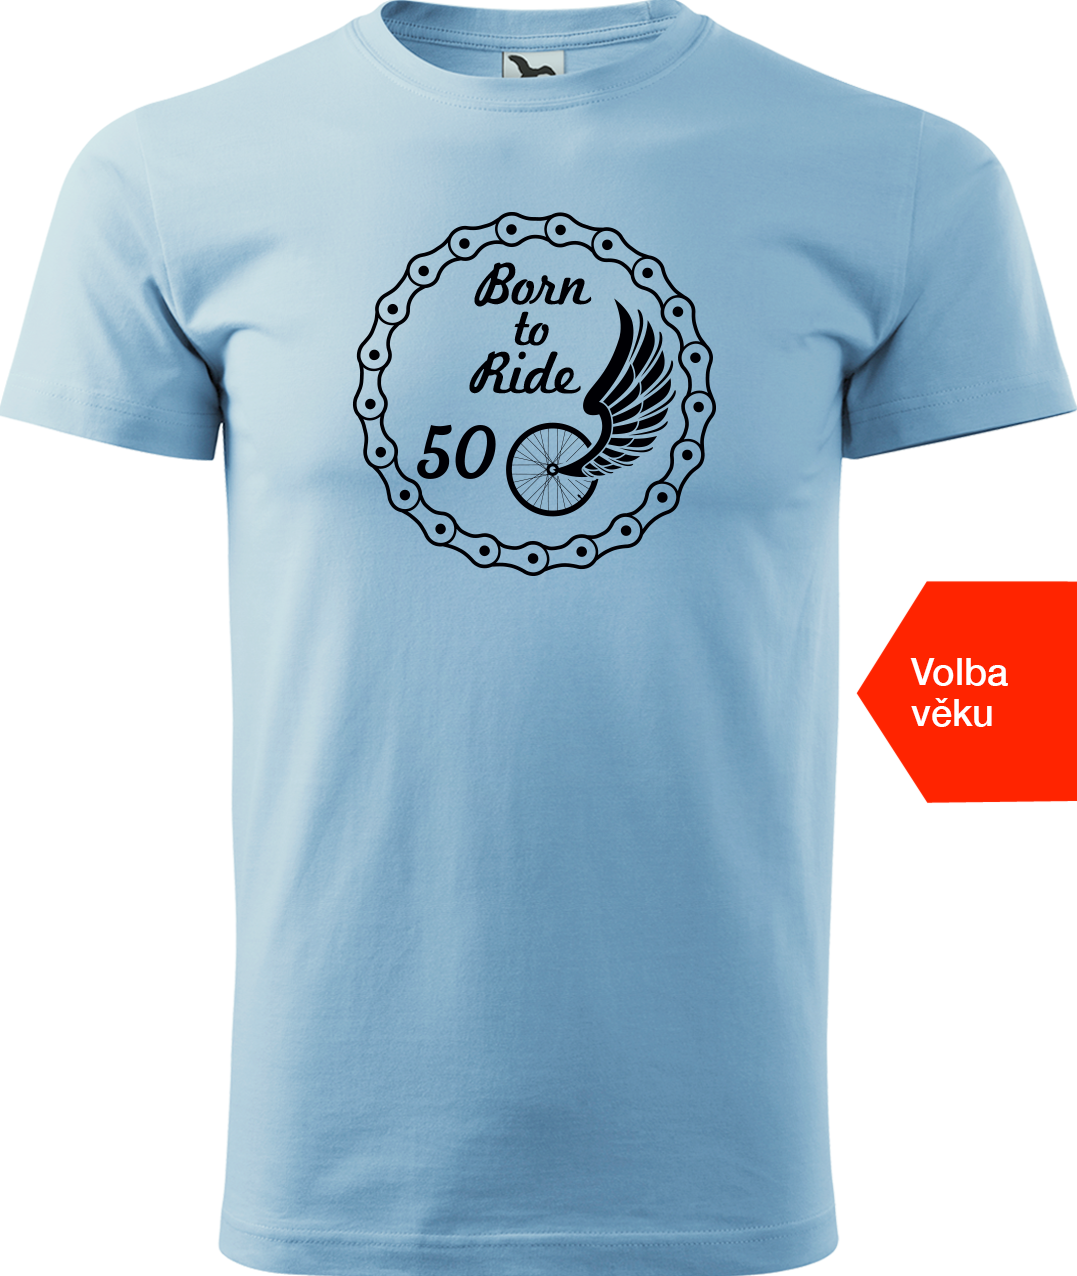 Pánské tričko pro cyklistu s věkem - Born to Ride (wings) Velikost: S, Barva: Nebesky modrá (15)